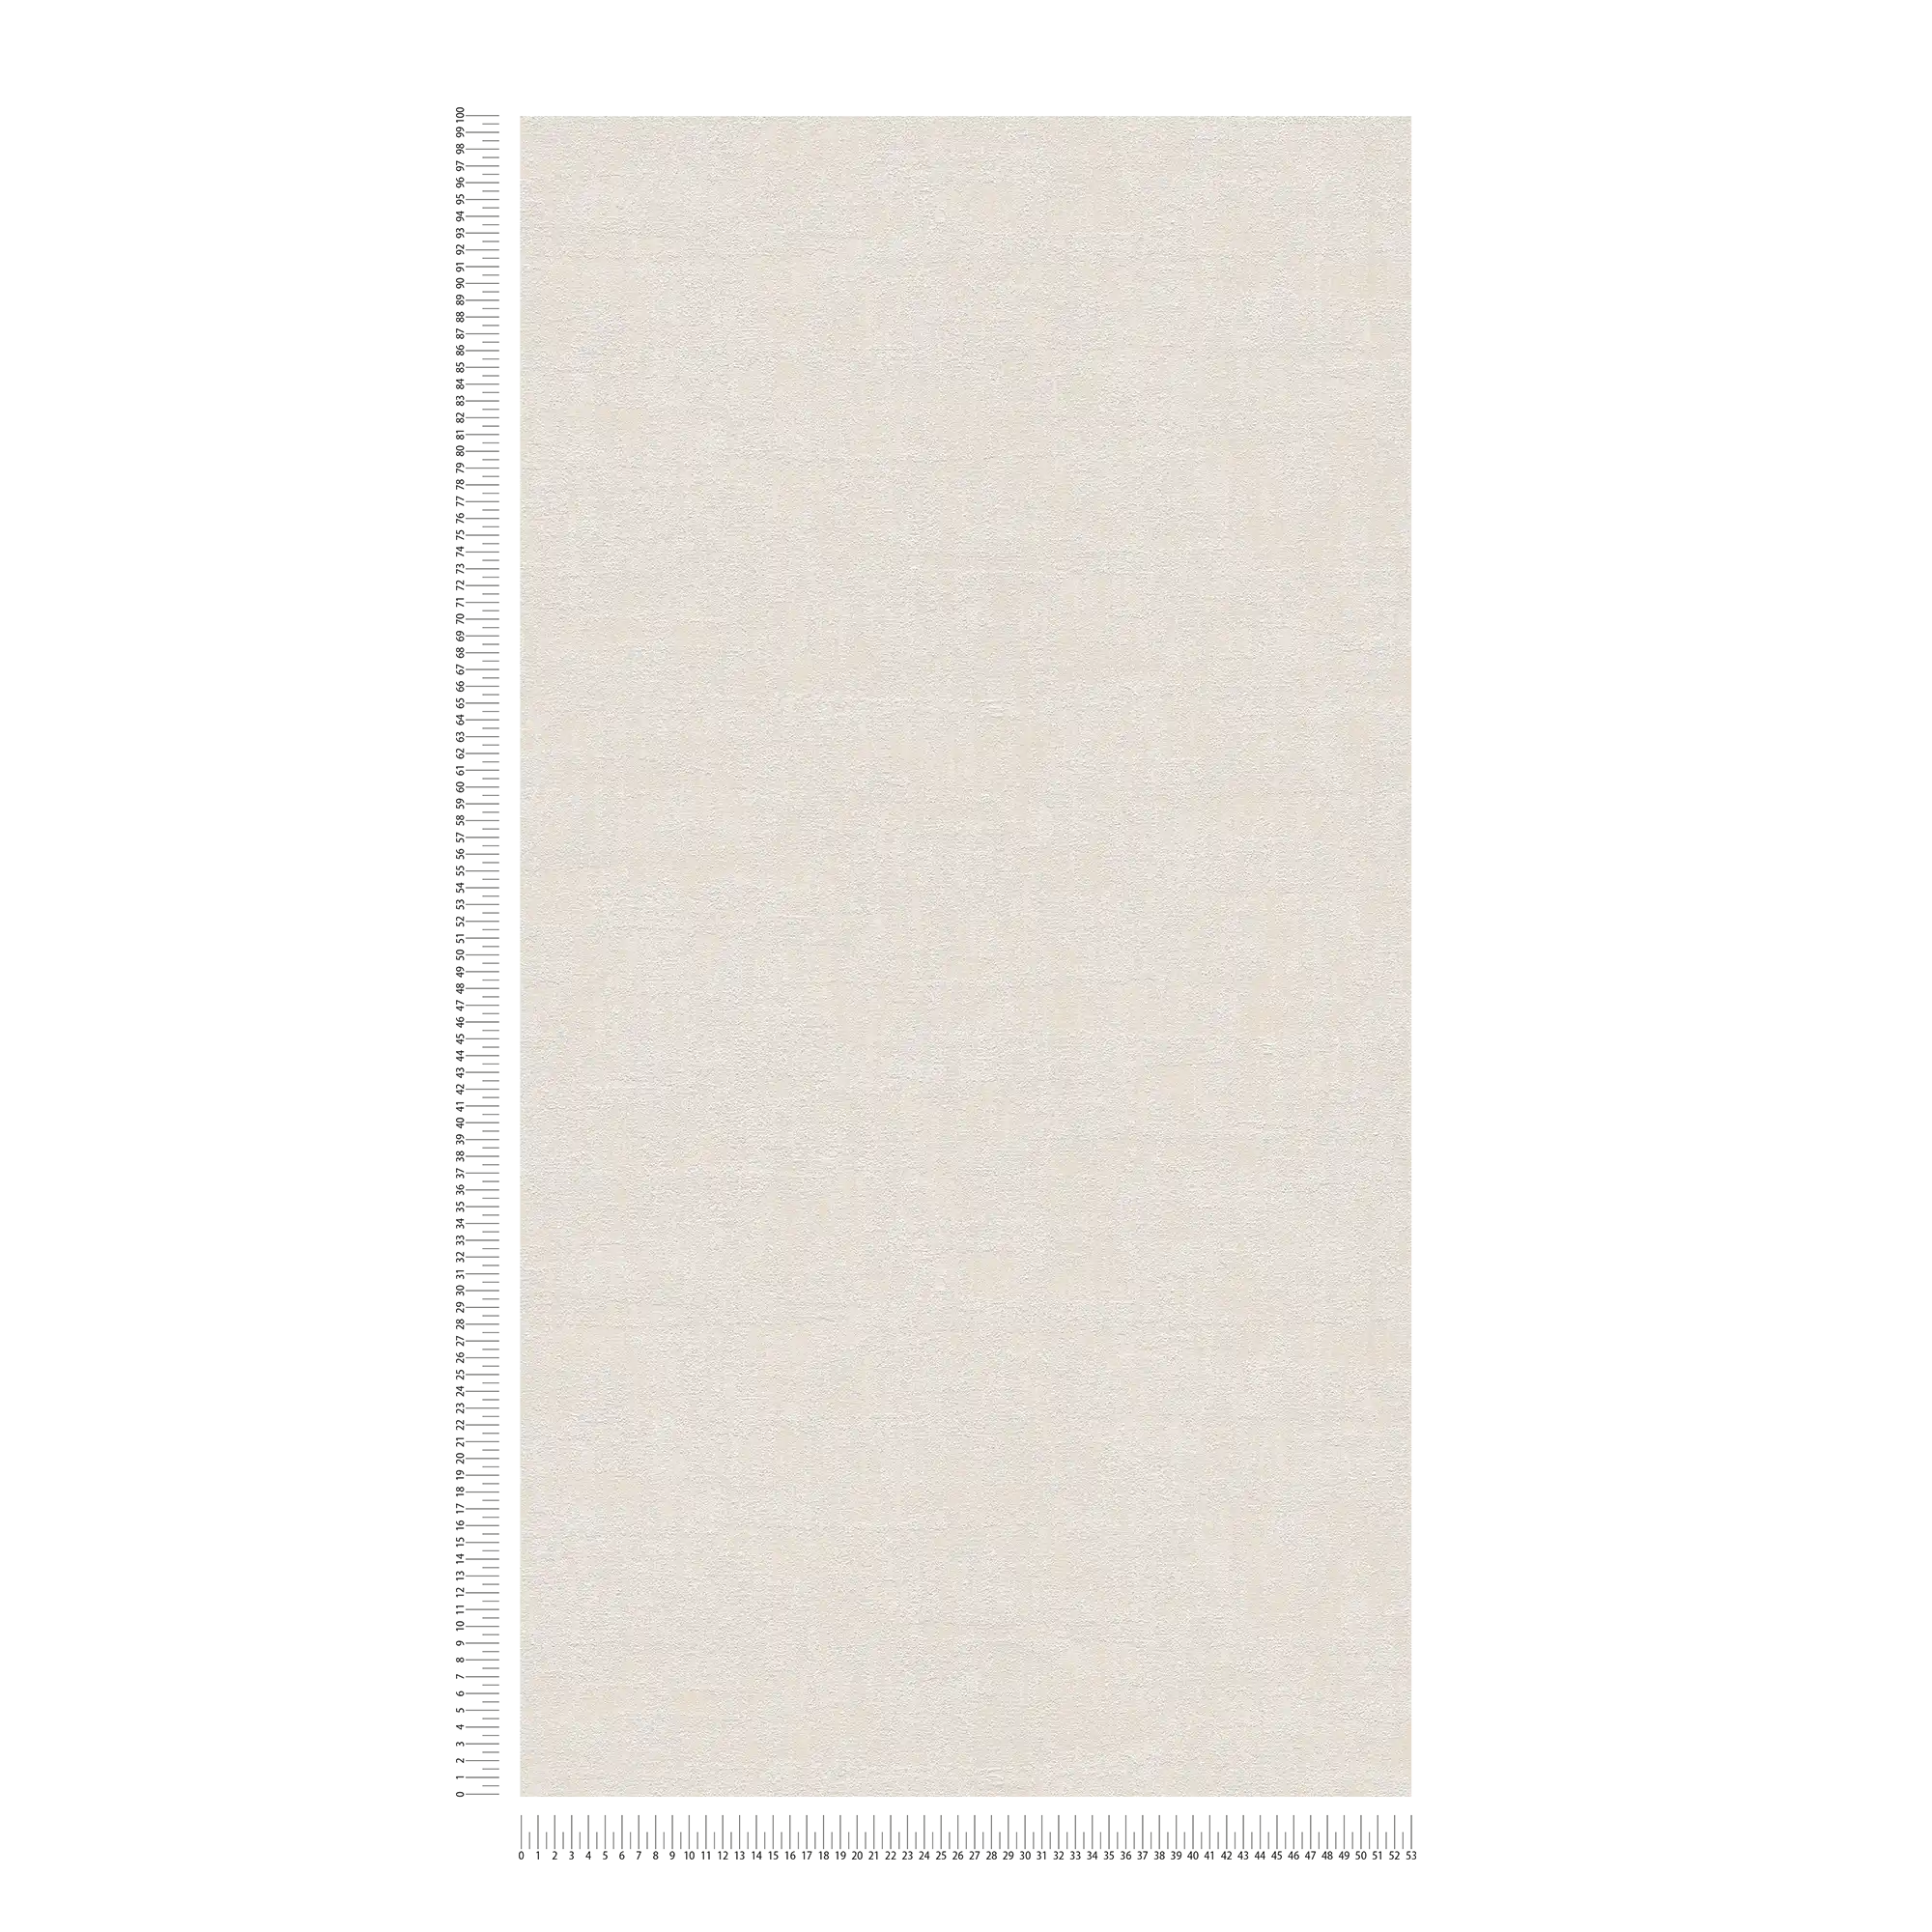             papier peint en papier à motifs de raphia dans des couleurs douces - crème, beige
        